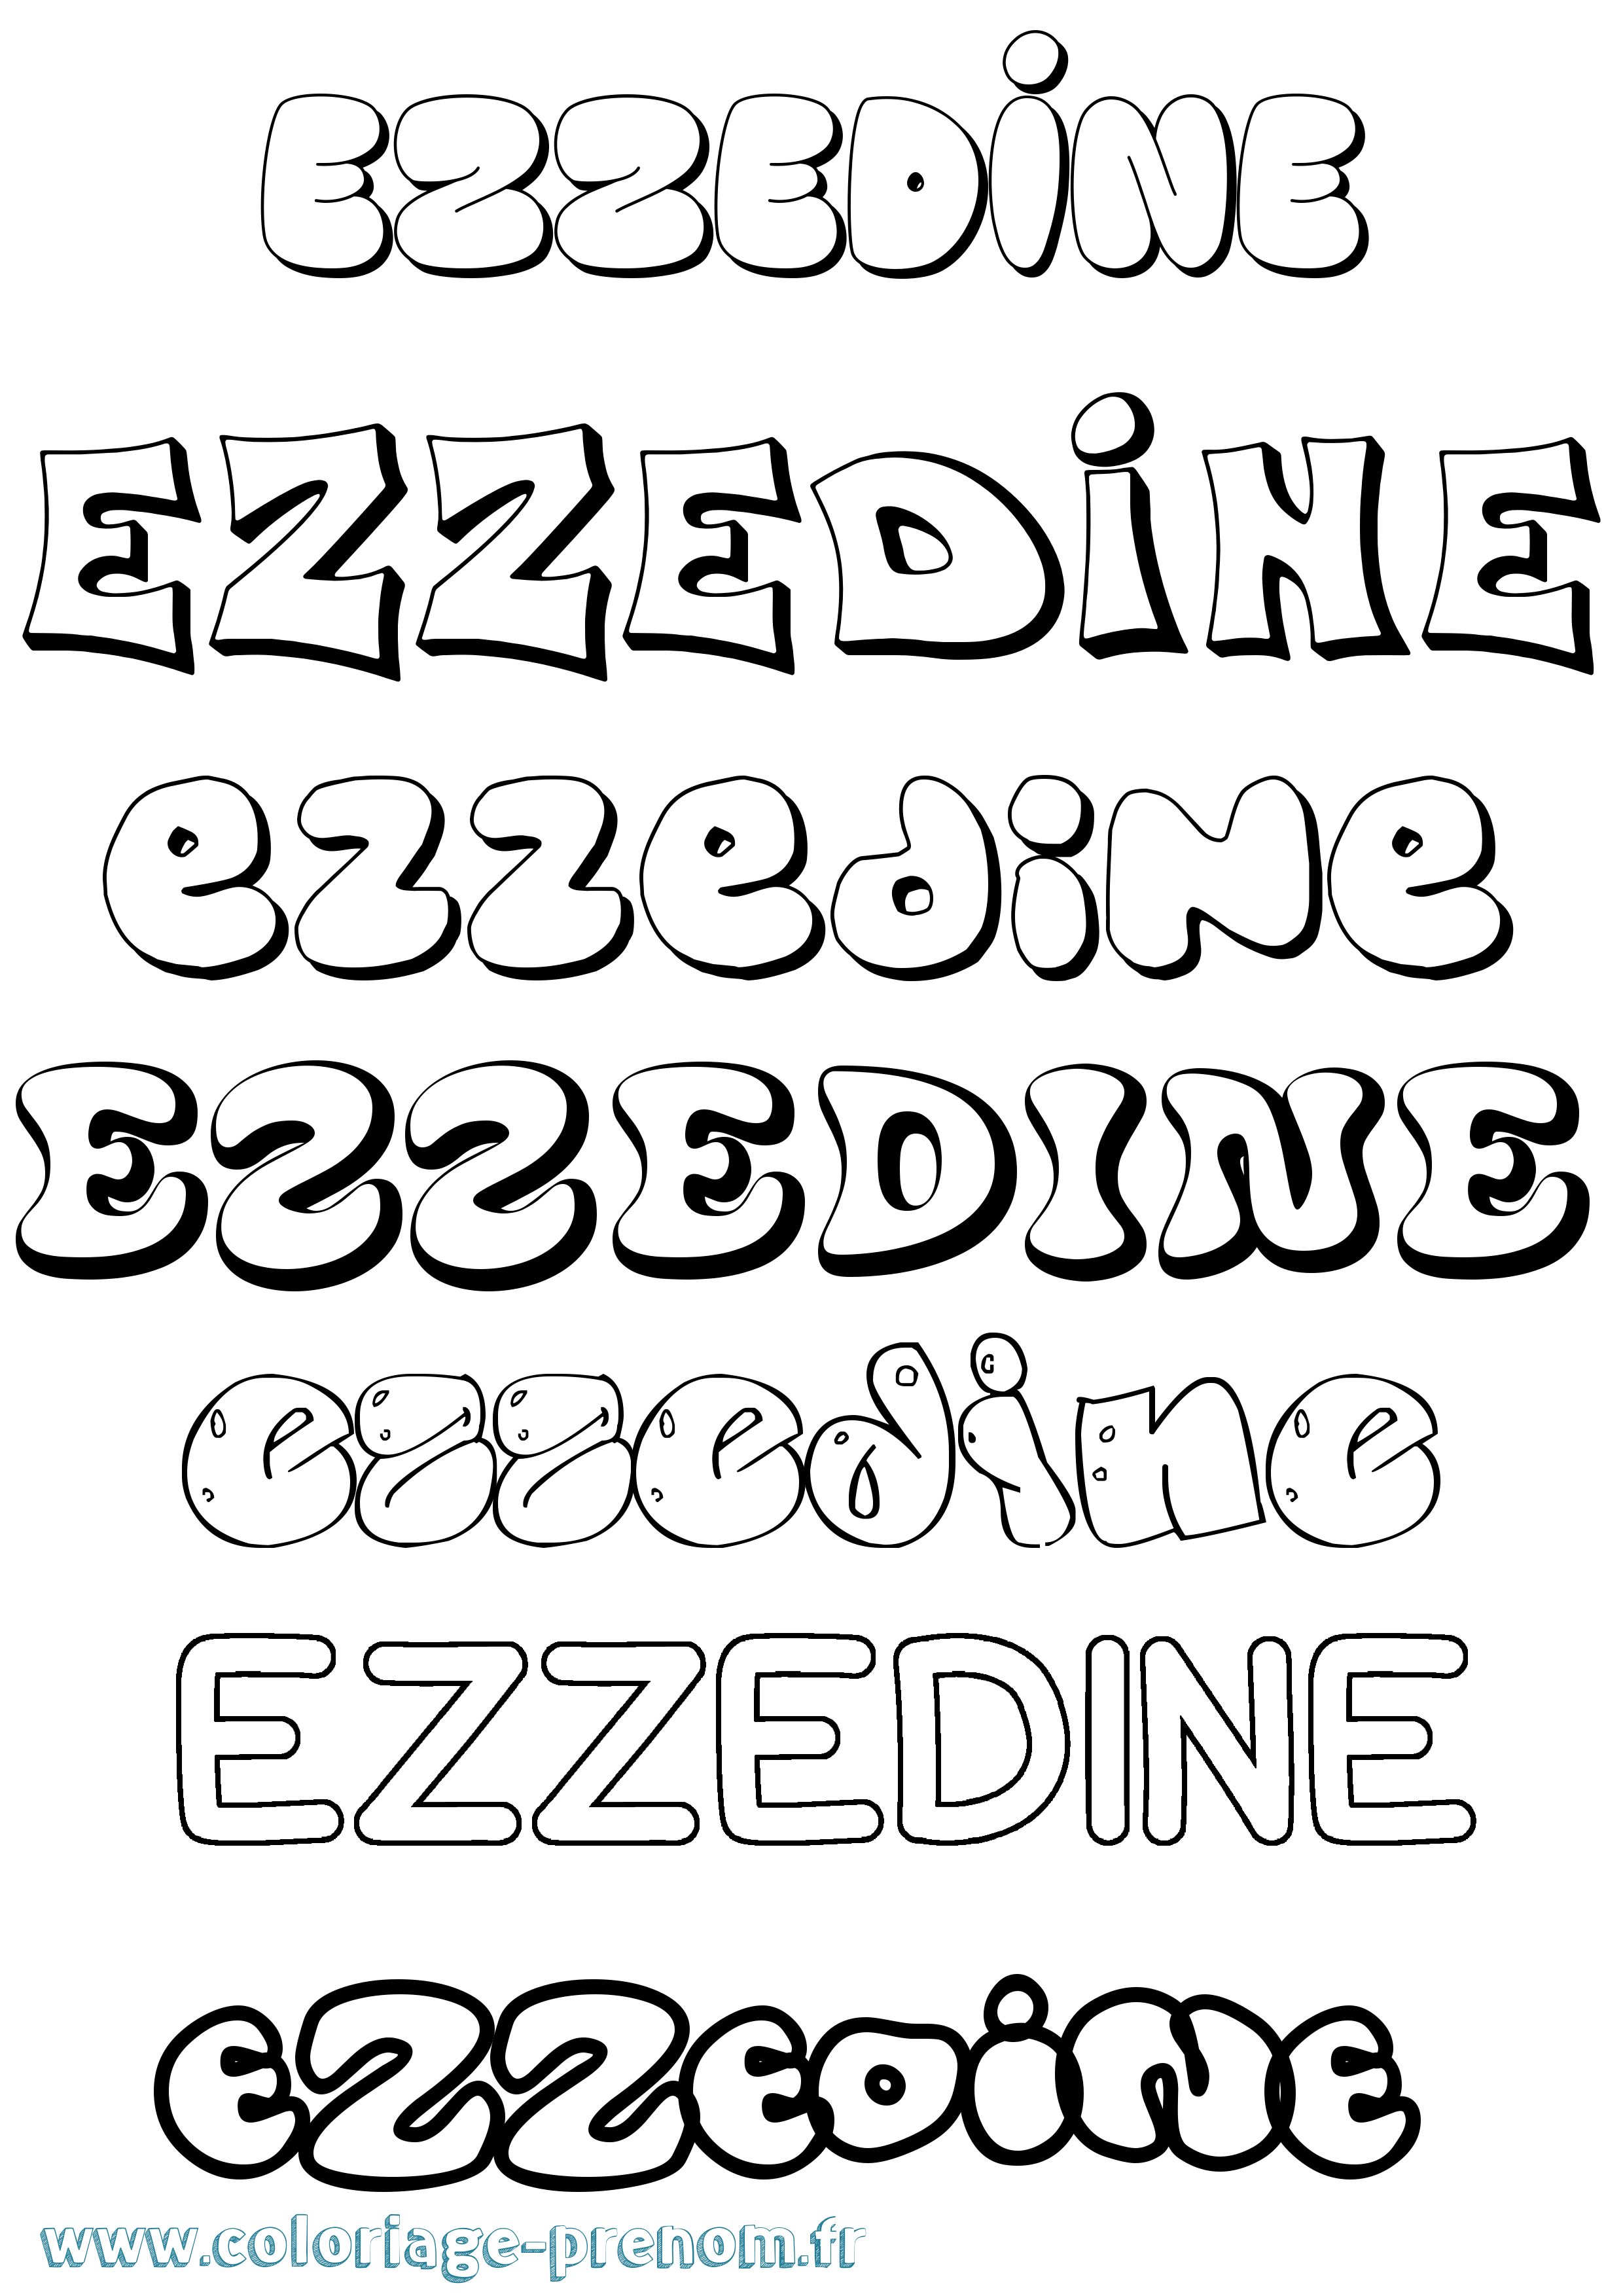 Coloriage prénom Ezzedine Bubble